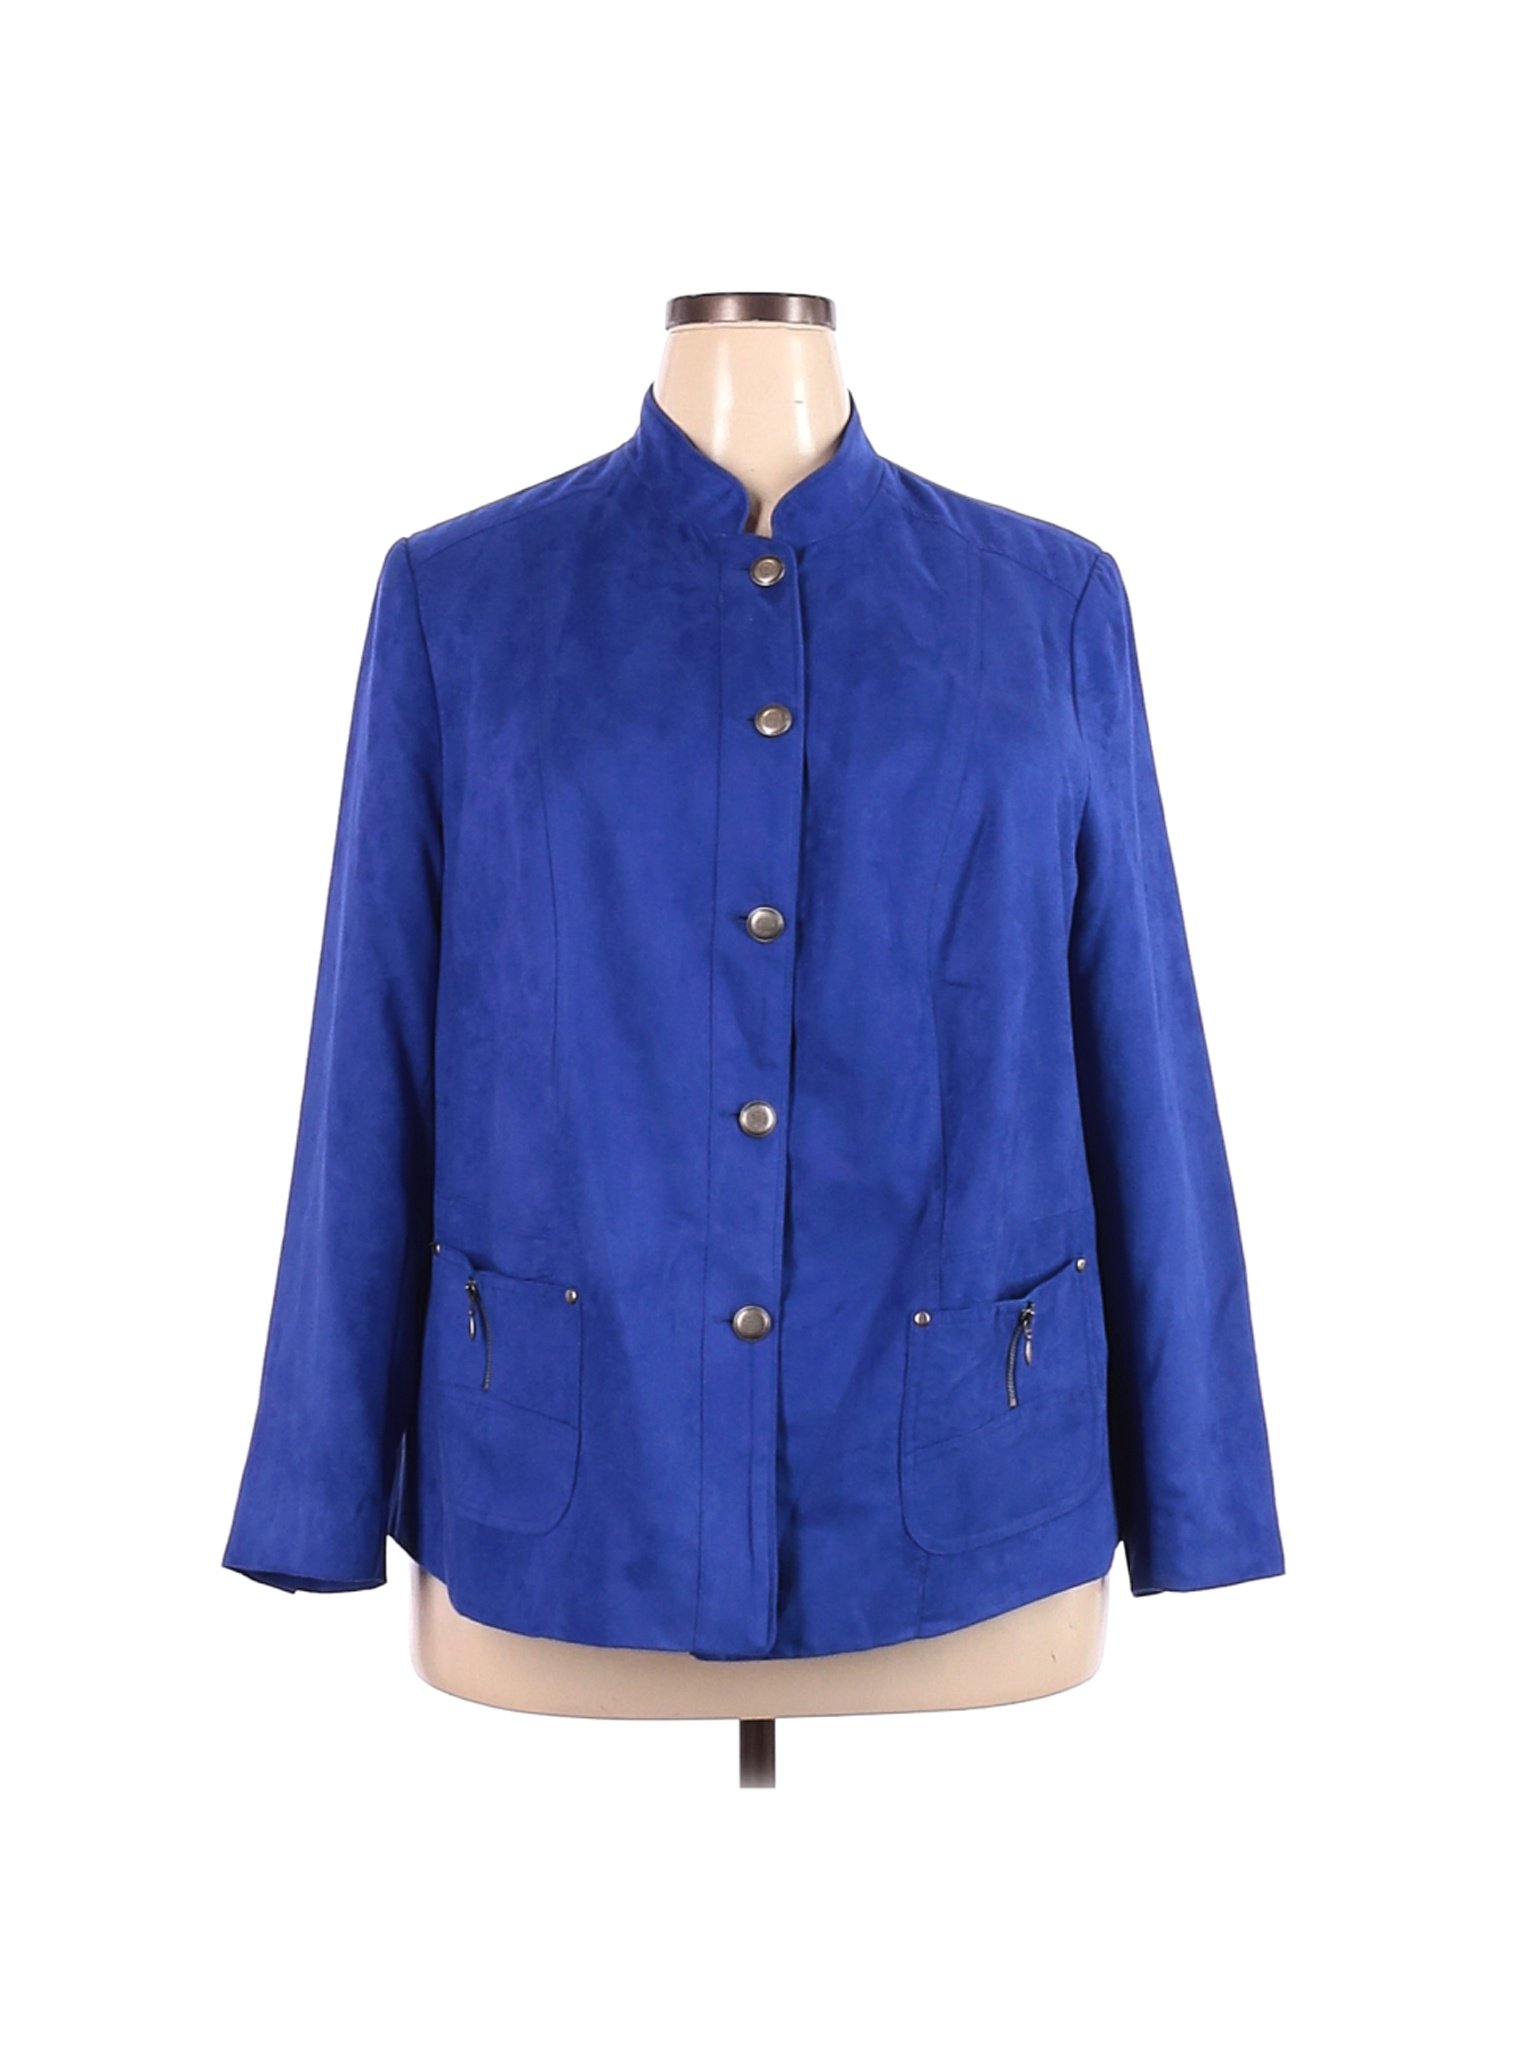 TanJay Women Blue Jacket 18 Plus | eBay